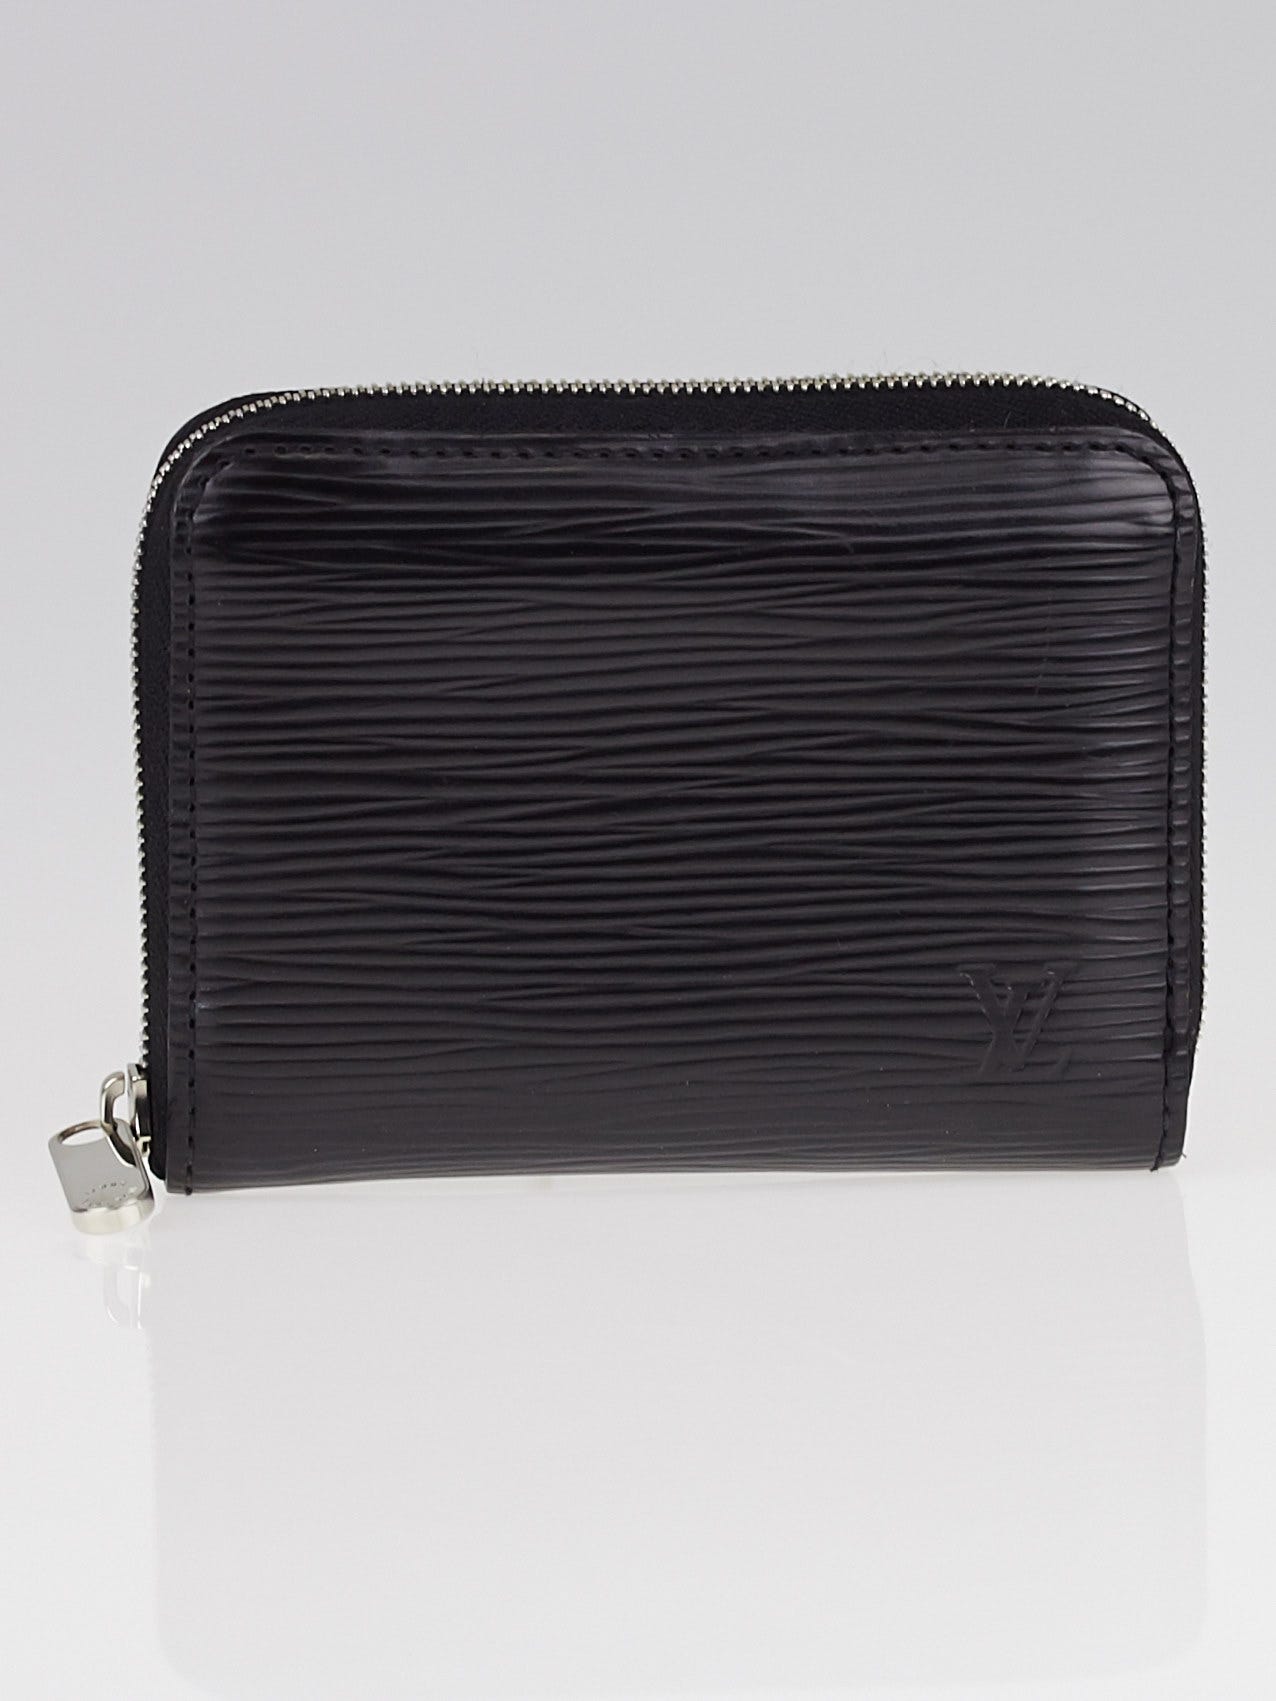 Louis Vuitton Epi Zippy Coin Purse Leather Black 9cmx11cmx2cm Free Shipping